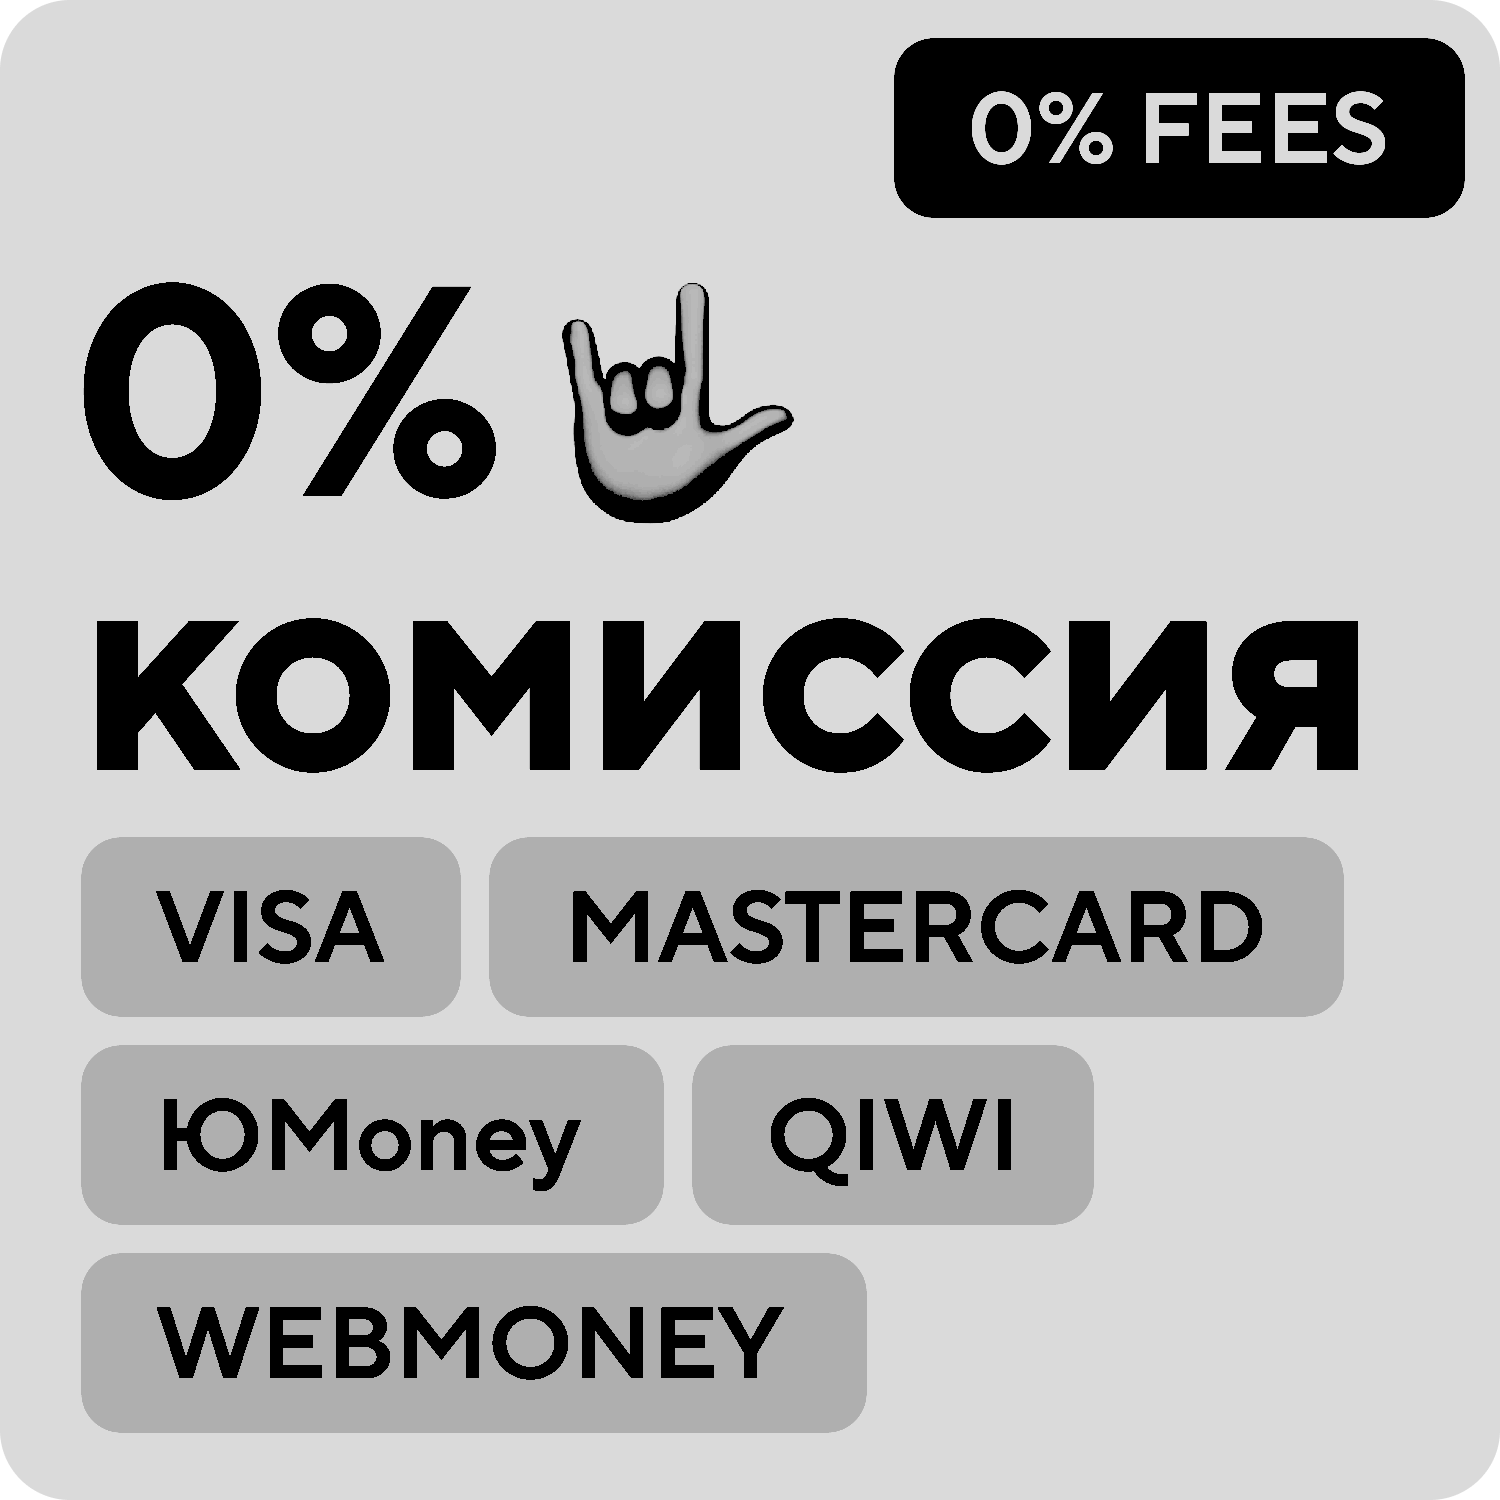 Far Cry 4 Uplay key RU+CIS💳0% fees Card